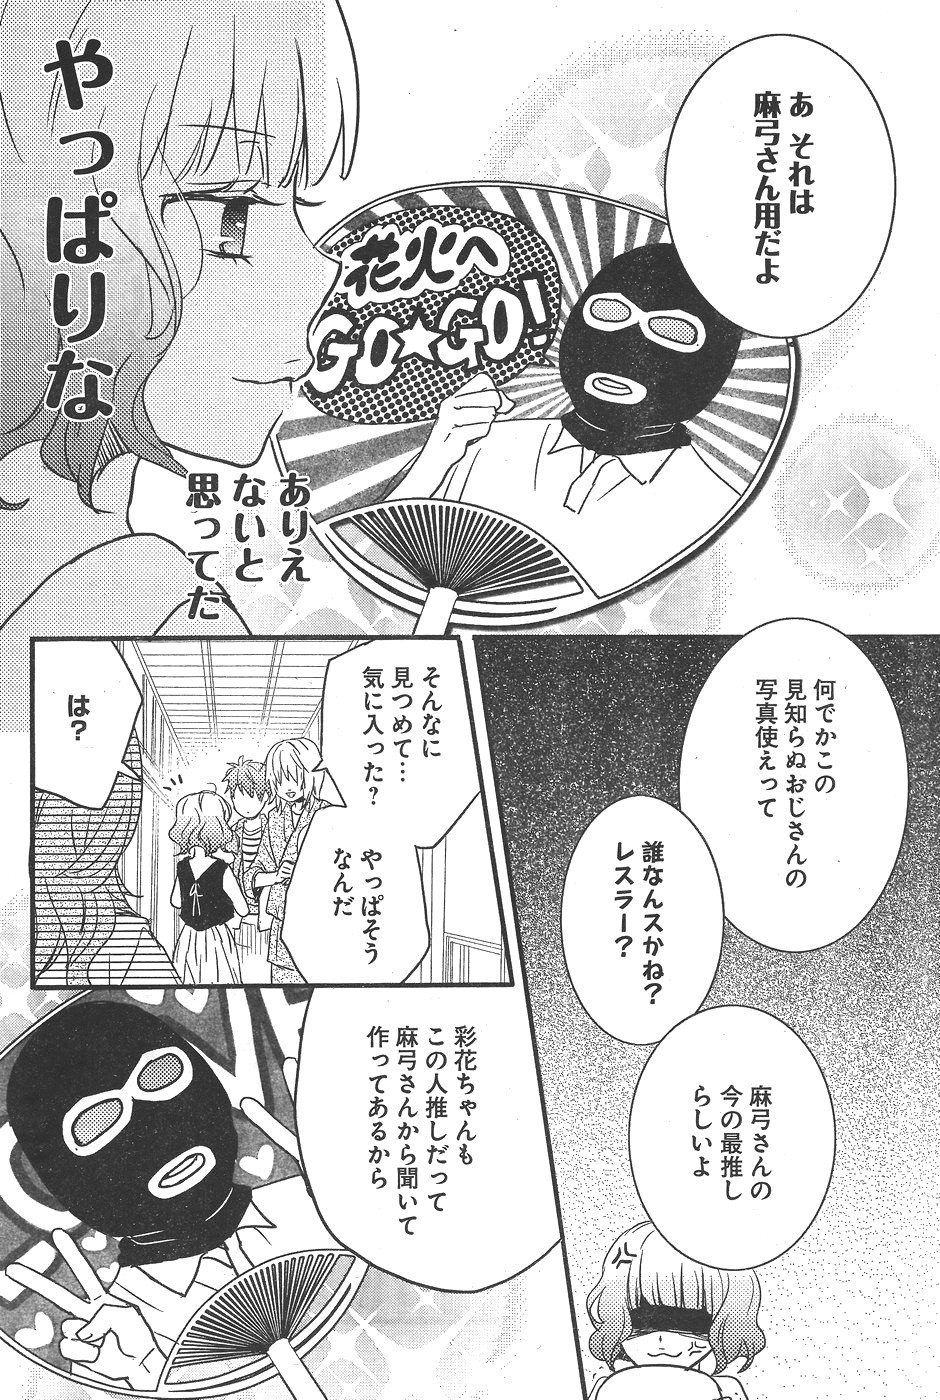 Bokura wa Minna Kawaisou - Chapter 73 - Page 4